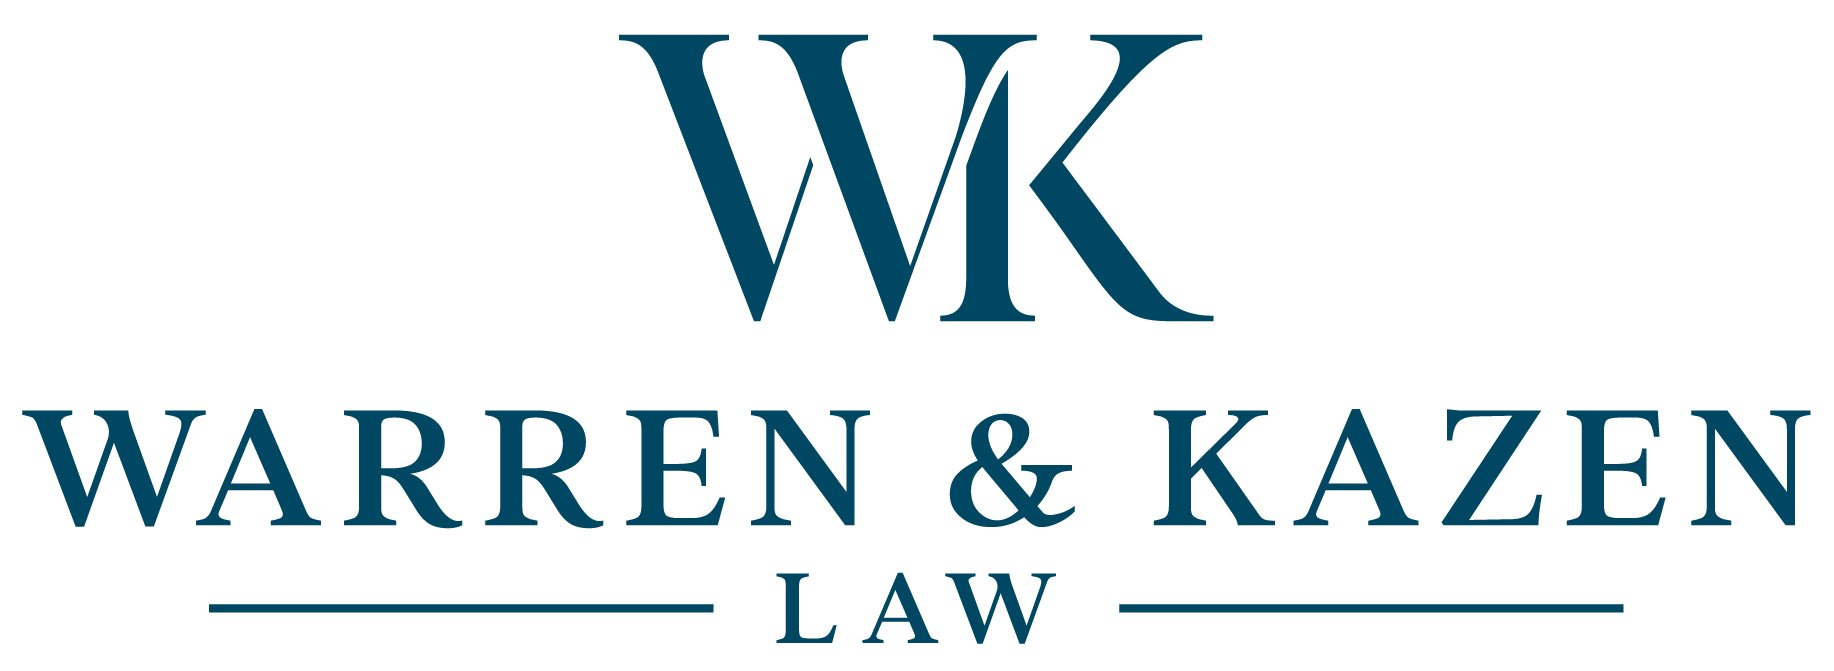 Warren & Kazen Law